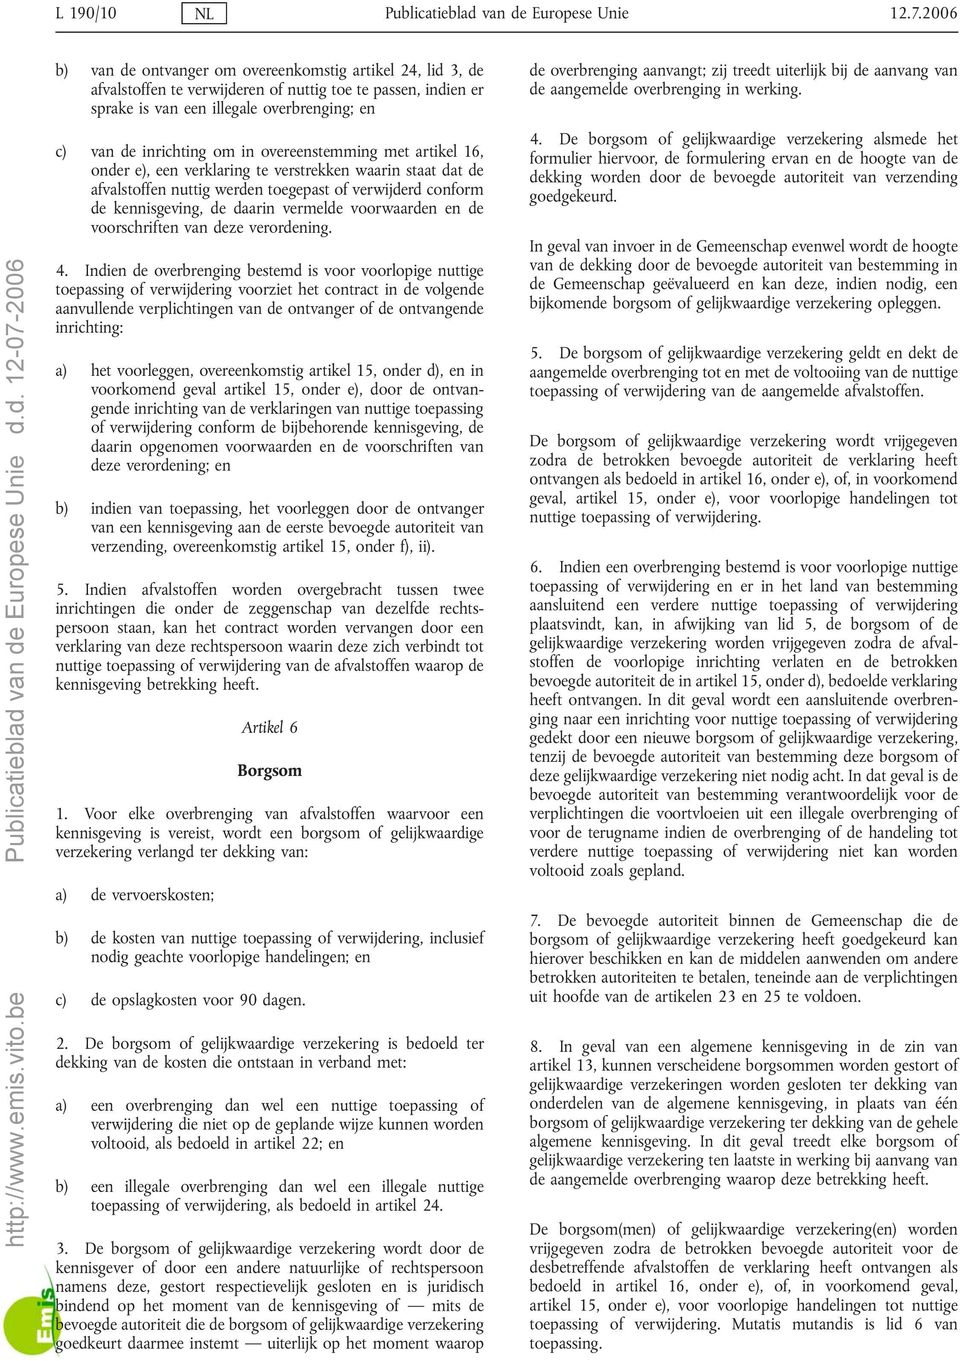 overeenstemming met artikel 16, onder e), een verklaring te verstrekken waarin staat dat de afvalstoffen nuttig werden toegepast of verwijderd conform de kennisgeving, de daarin vermelde voorwaarden